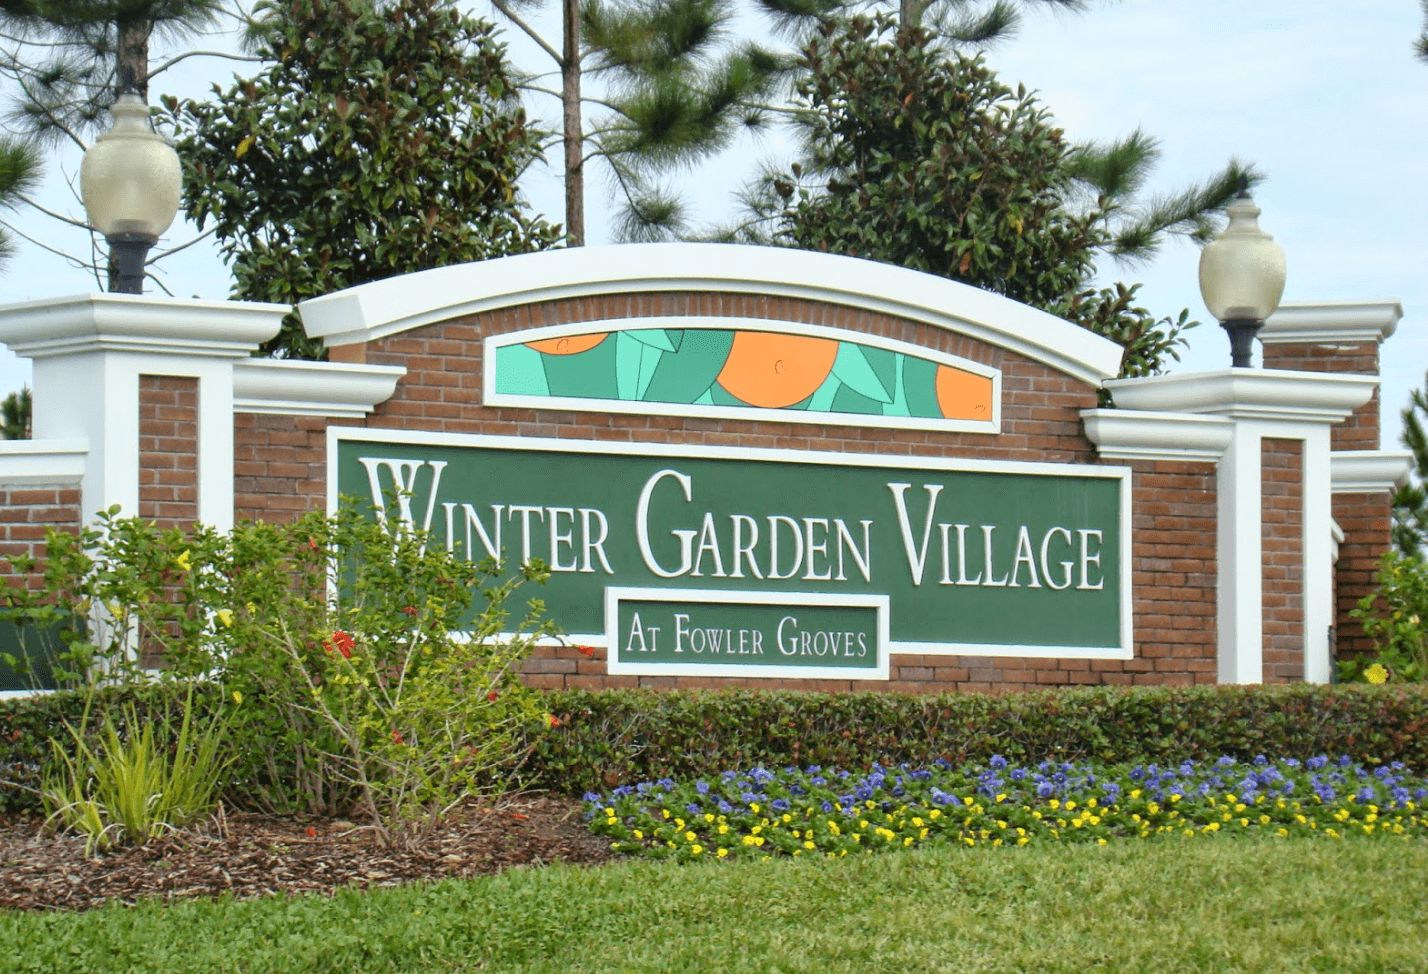 Compras em Orlando - Winter Garden Village